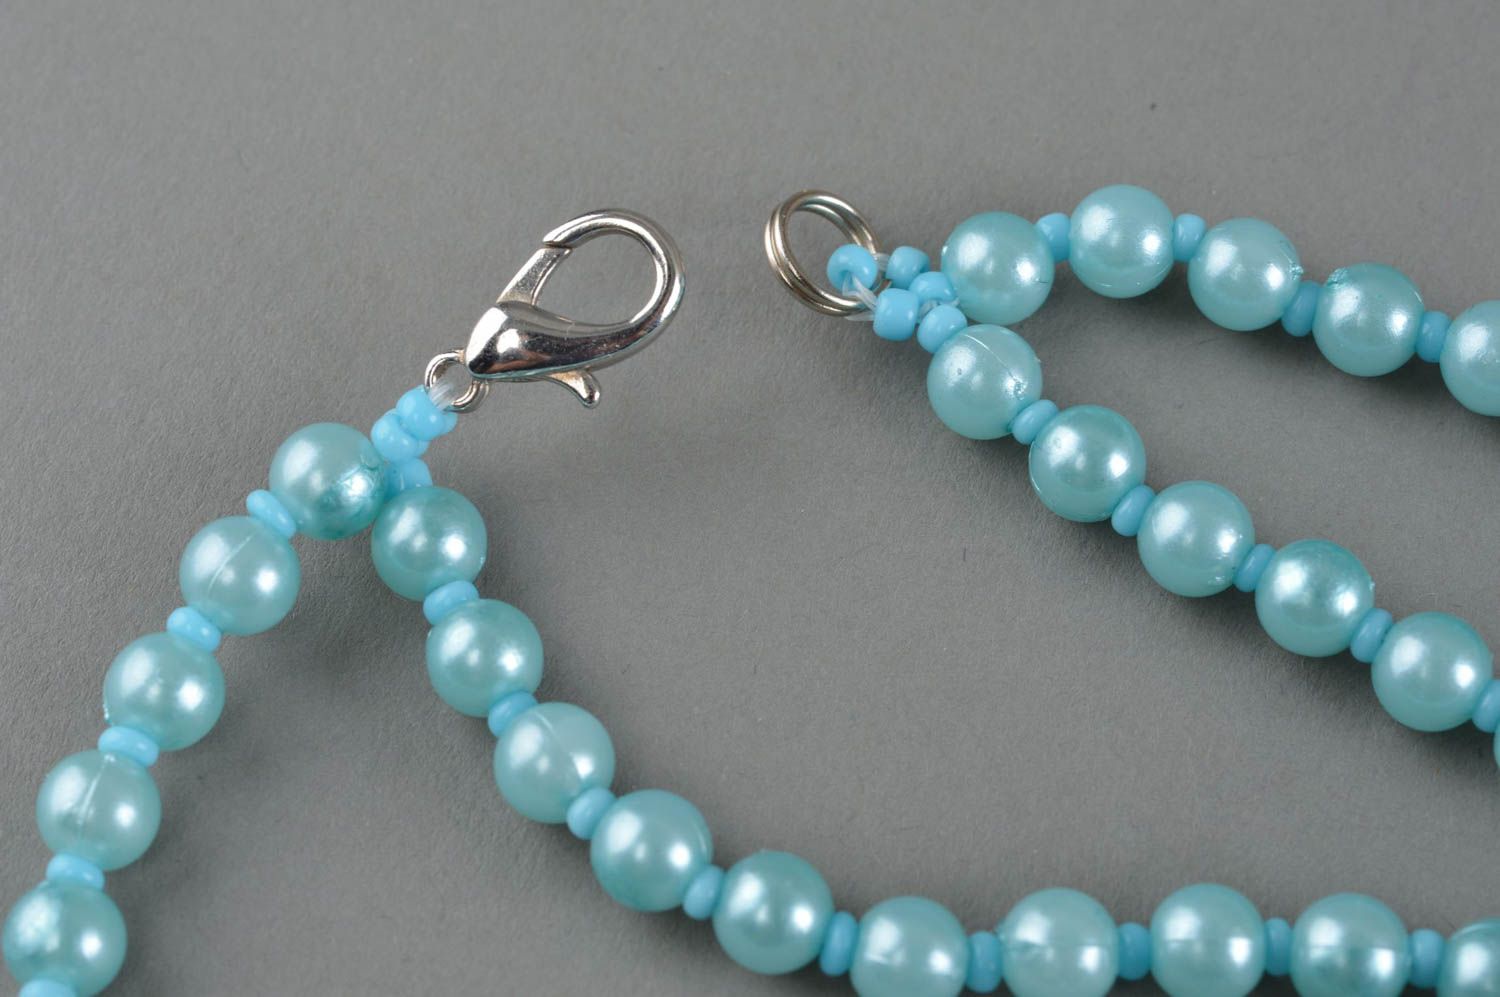 Handmade beaded necklace blue and white elegant accessory stylish jewelry photo 4